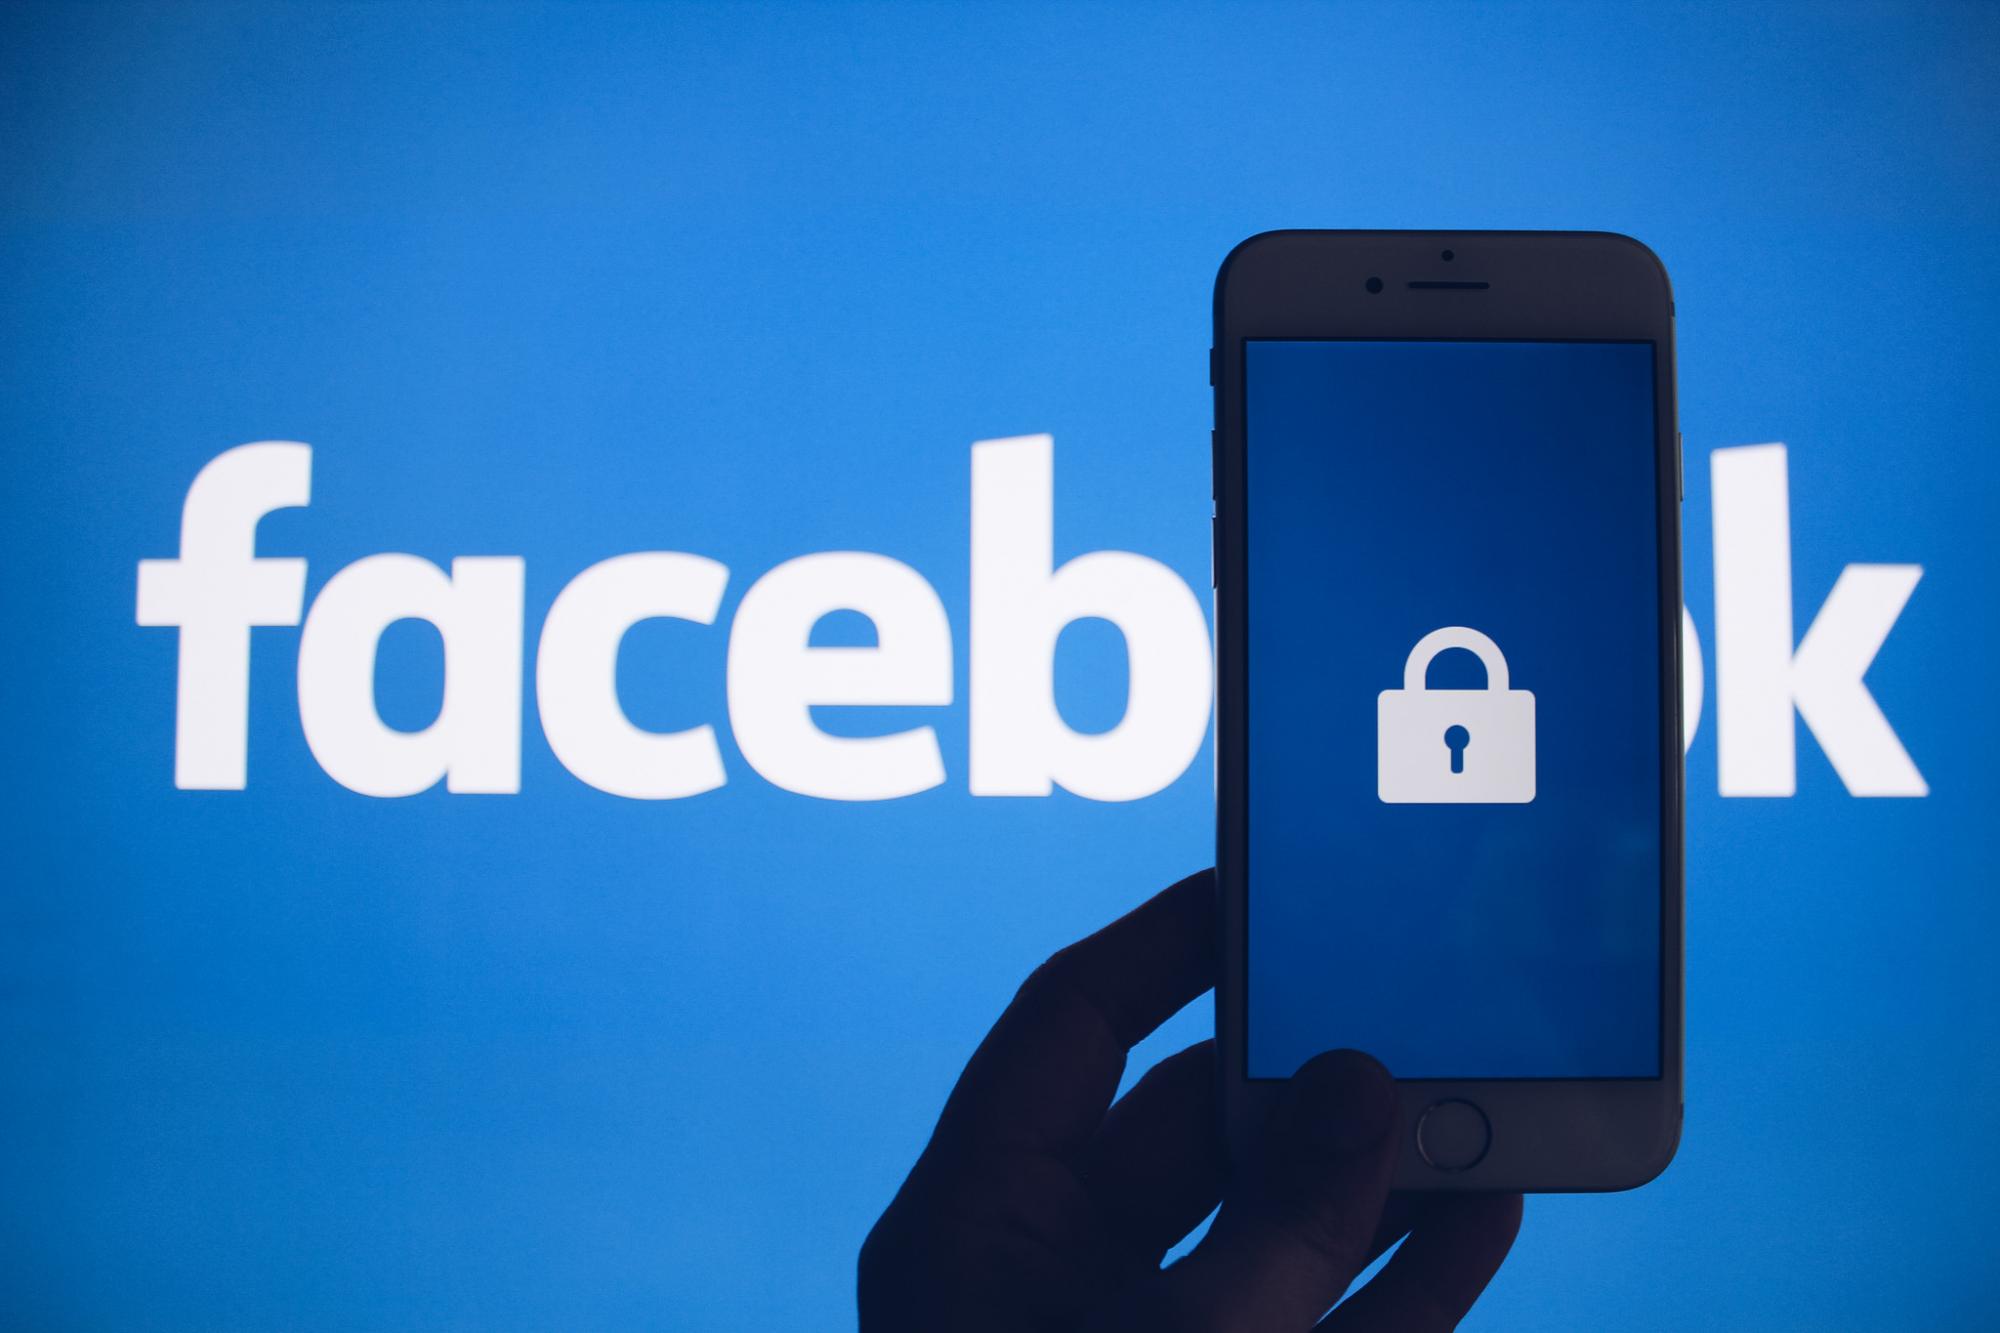 Українців попередили про злом через Facebook: не відкривайте посилання